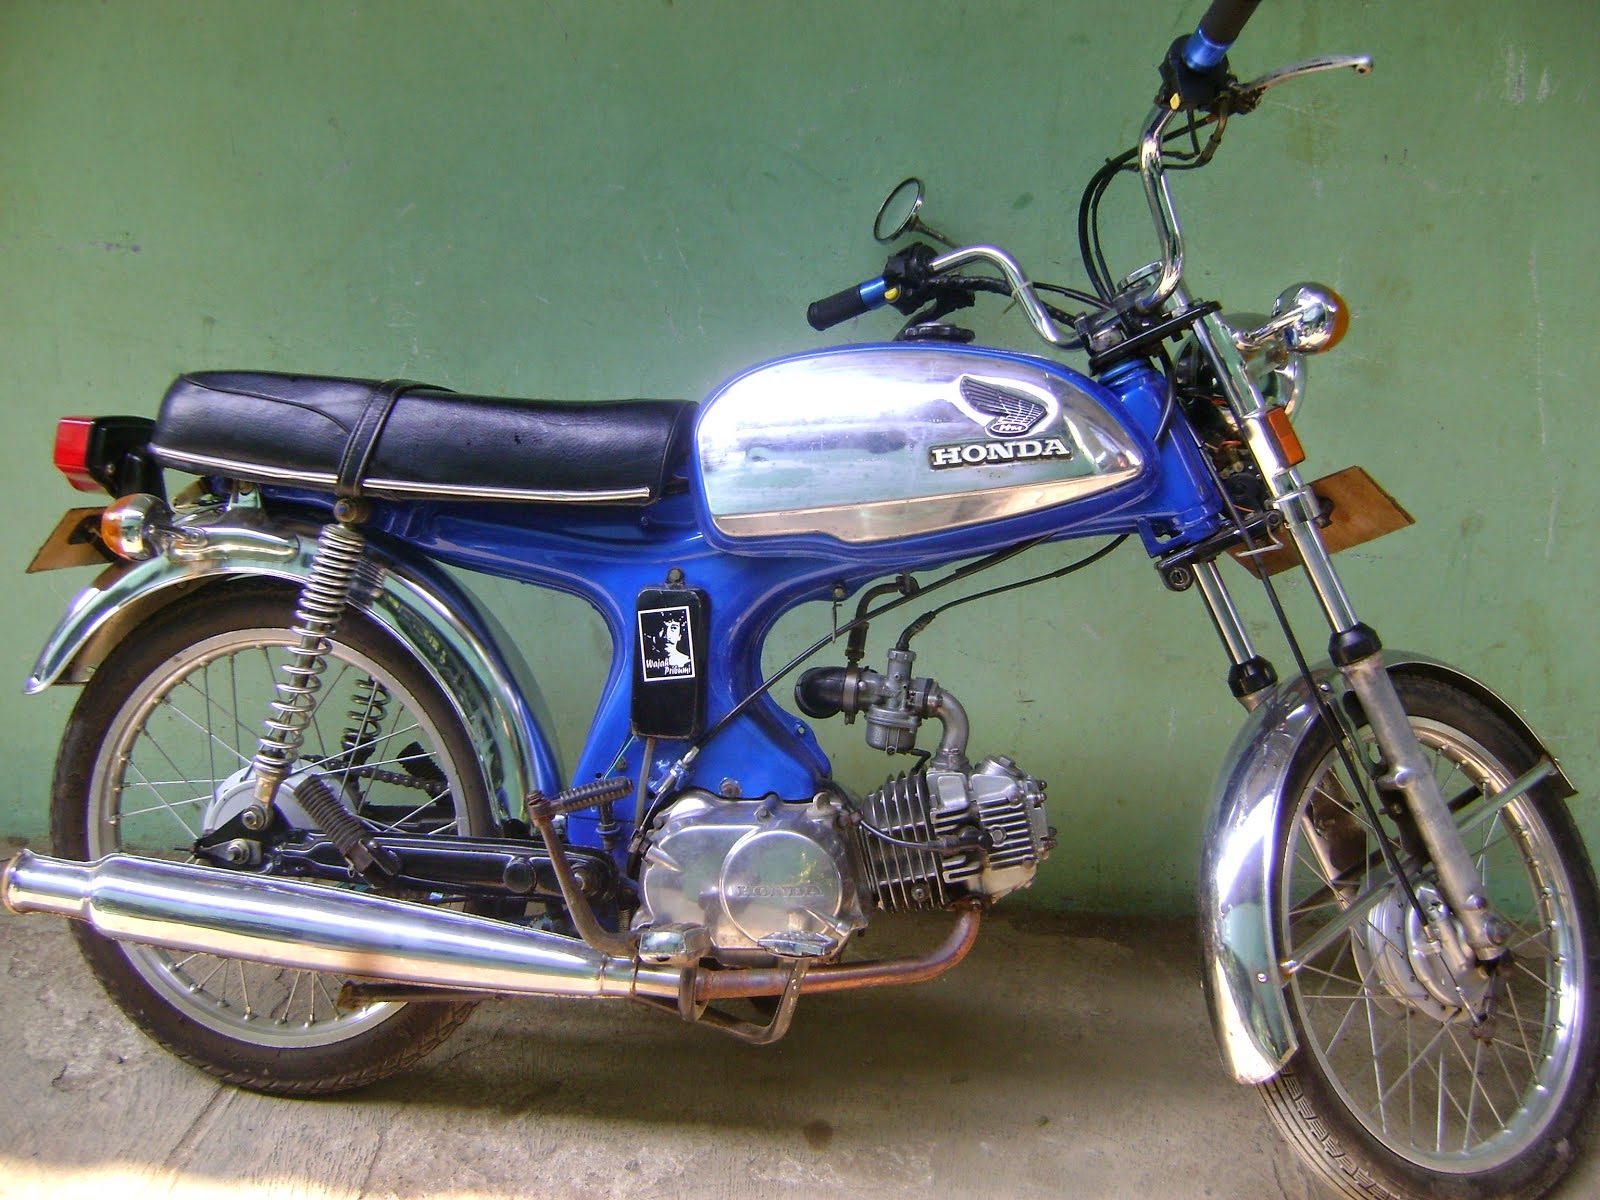 HOBIY: Kumpulan Sepeda Motor Honda Era 60 dan 70an